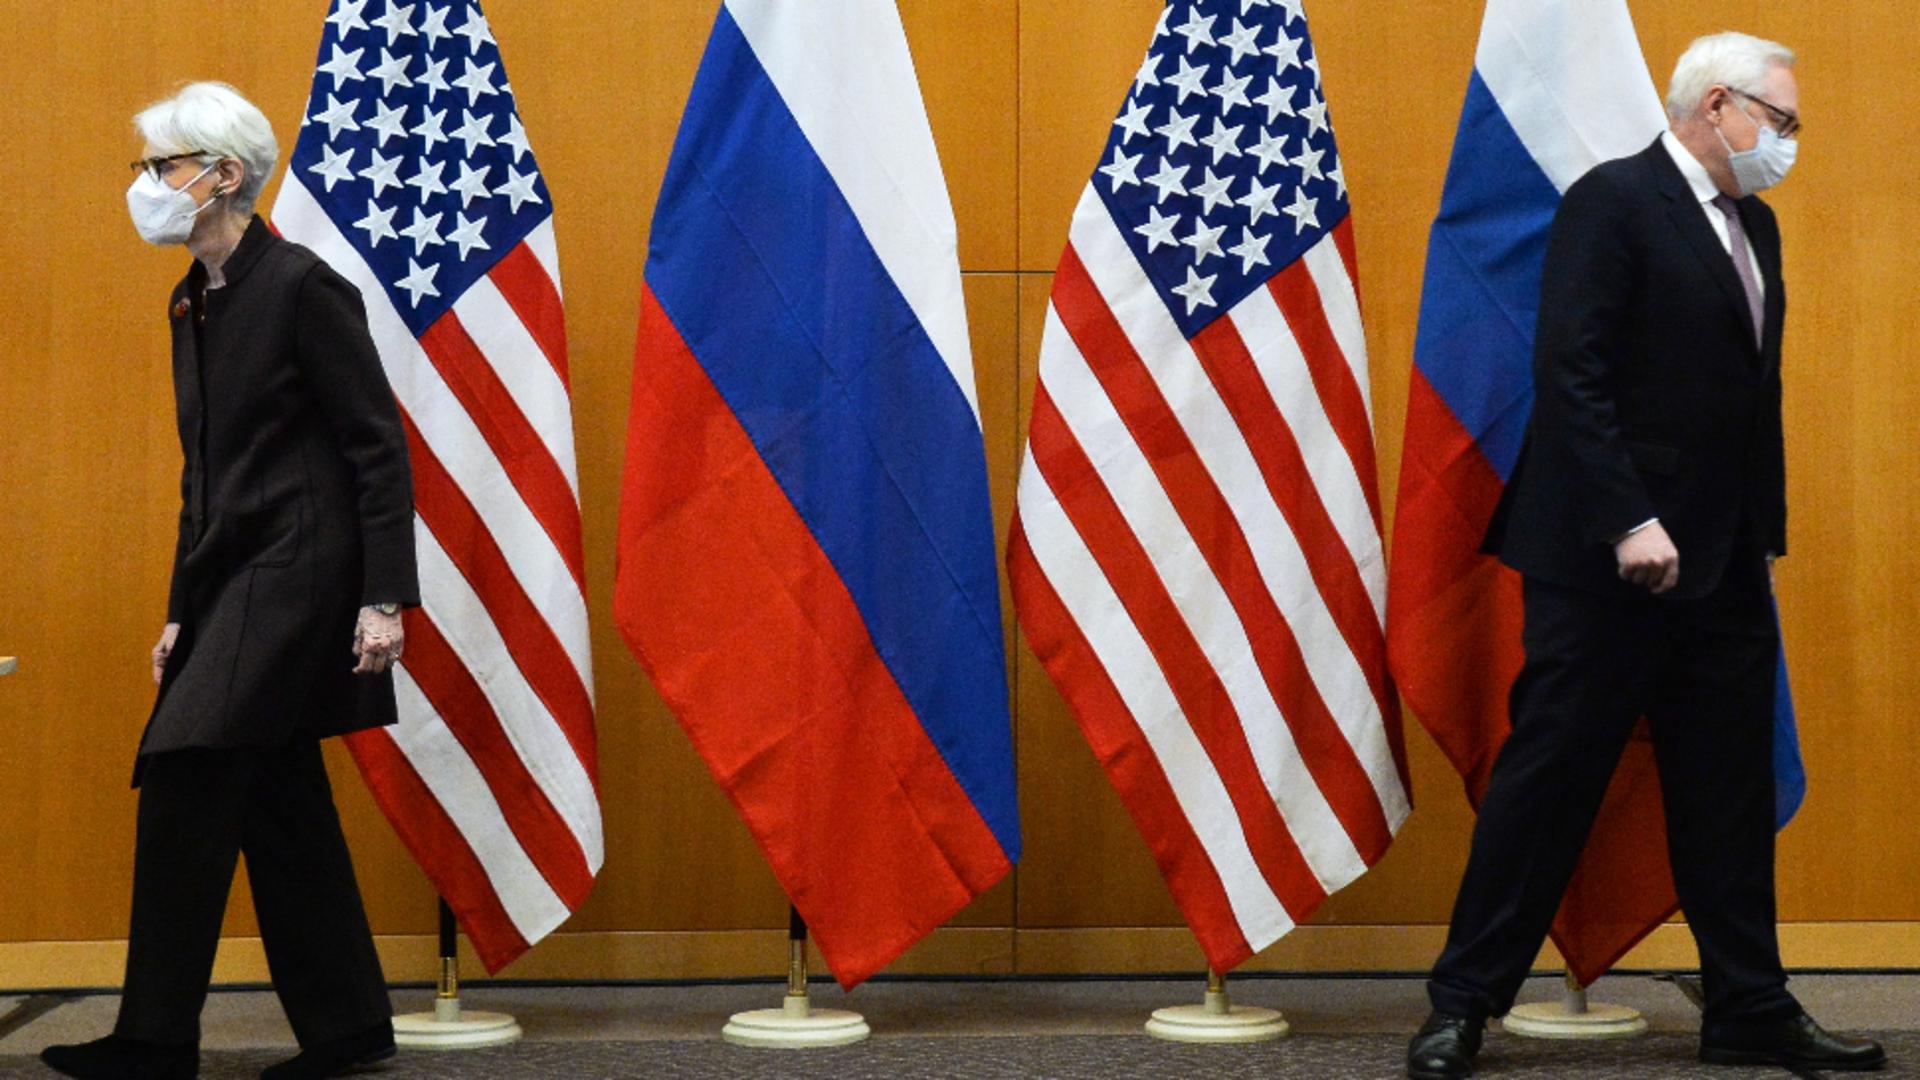 Diplomația nu face minuni. Rusia și Occident, în conflict. Foto/Profimedia